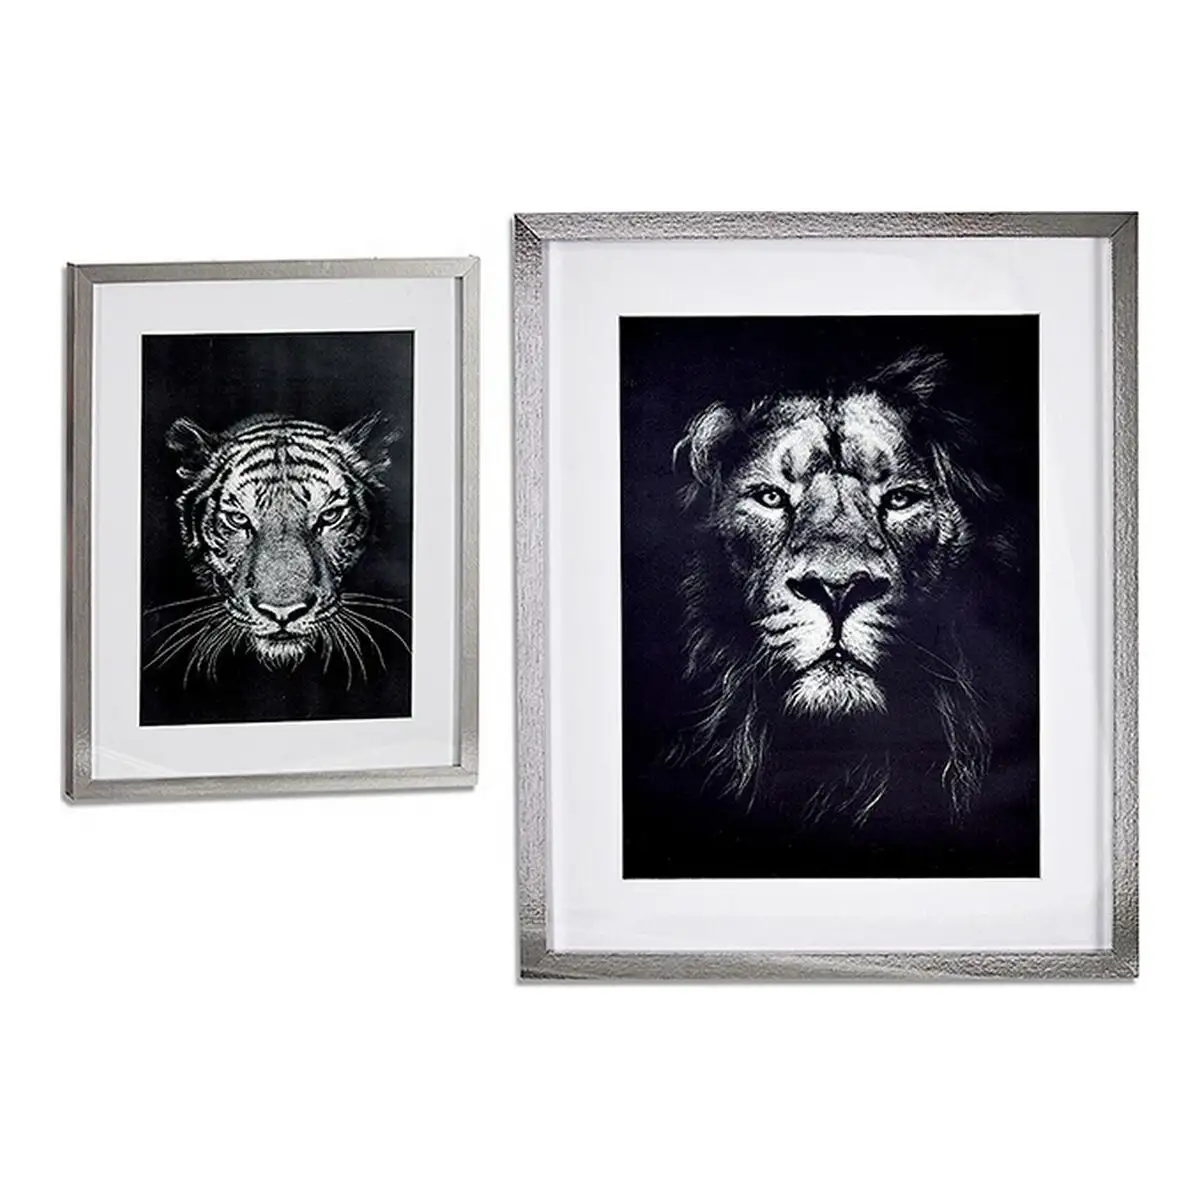 Cadre lion tiger 43 x 3 x 53 cm _3006. DIAYTAR SENEGAL - Où la Qualité et la Diversité Fusionnent. Explorez notre boutique en ligne pour découvrir une gamme variée de produits qui incarnent l'excellence et l'authenticité.